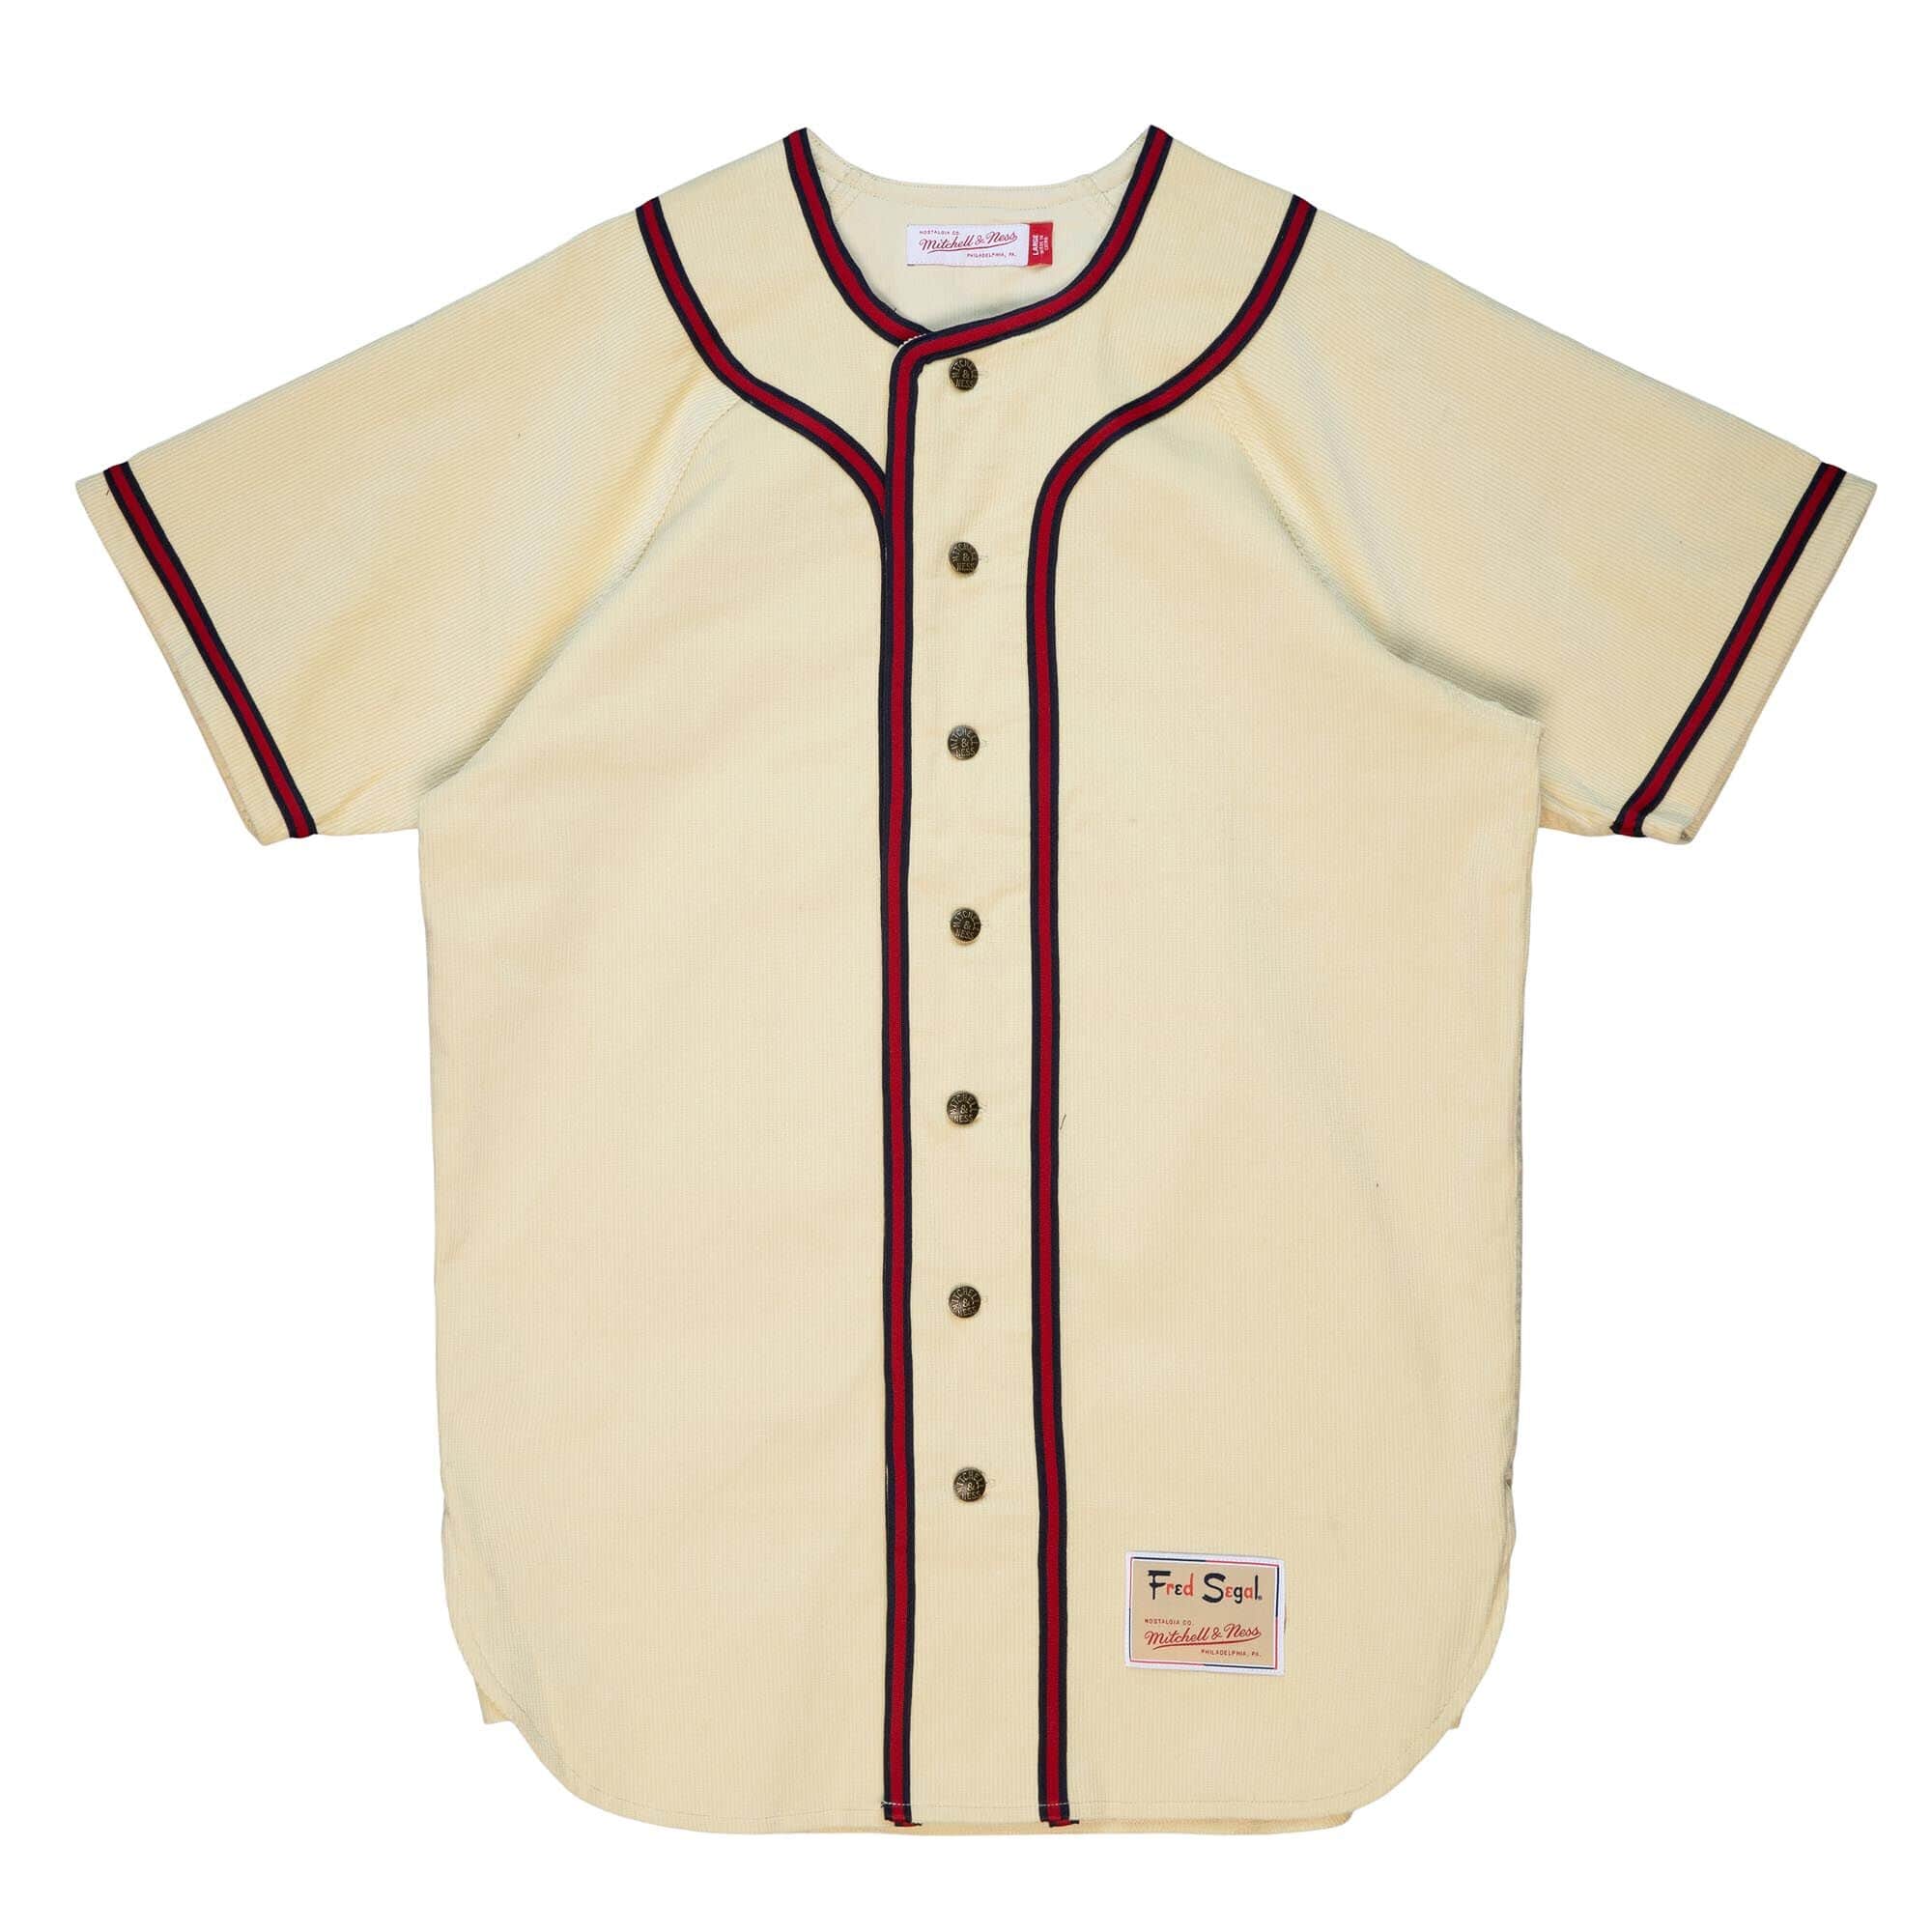 M&N x Fred Segal Corduroy Baseball Jersey – Supreme Sports Style